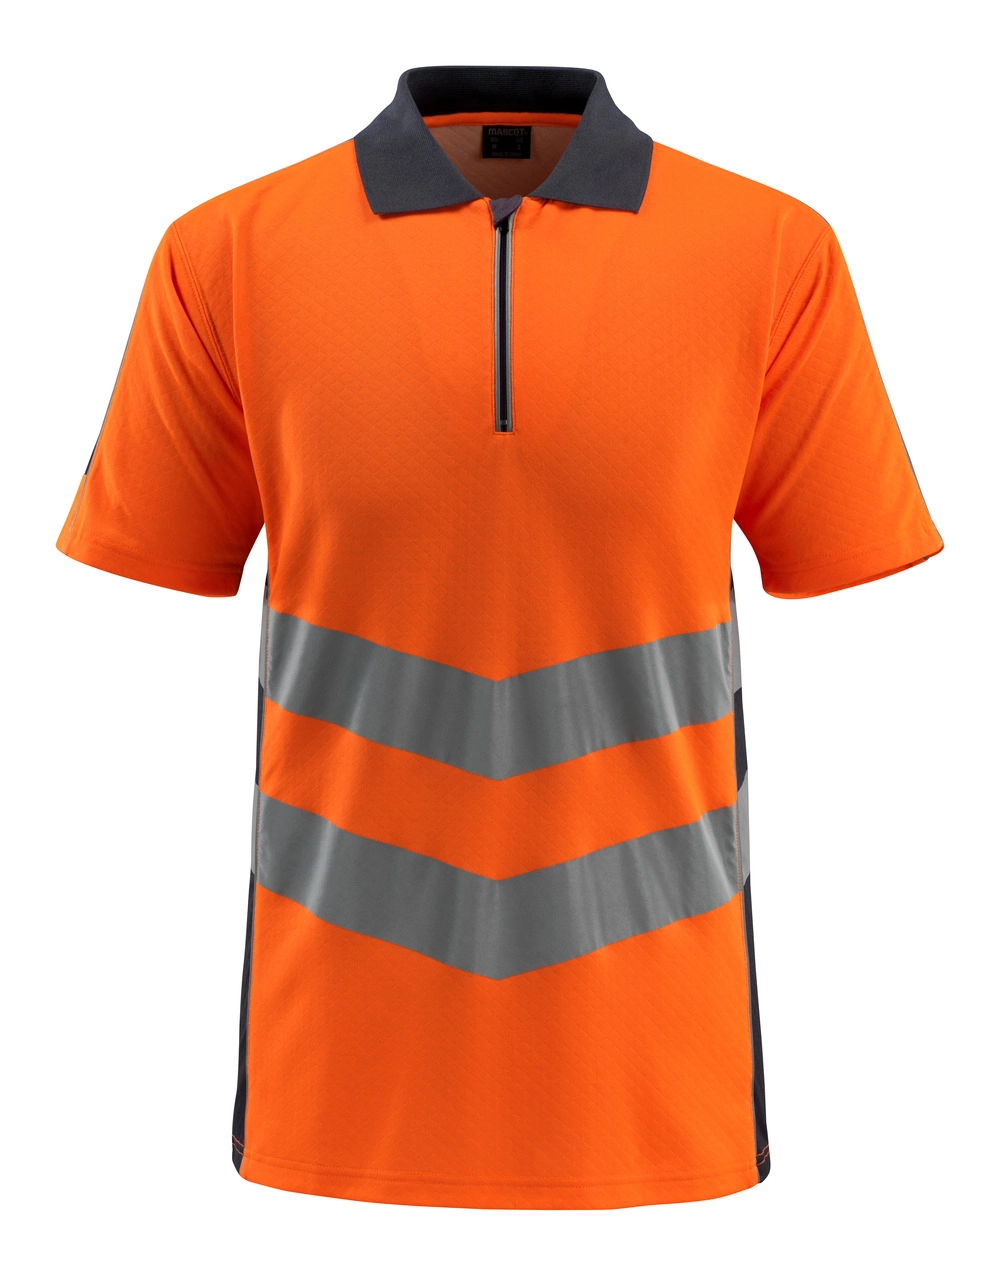 MASCOT® Murton Polo-shirt Größe 3XL, hi-vis orange/schwarzblau